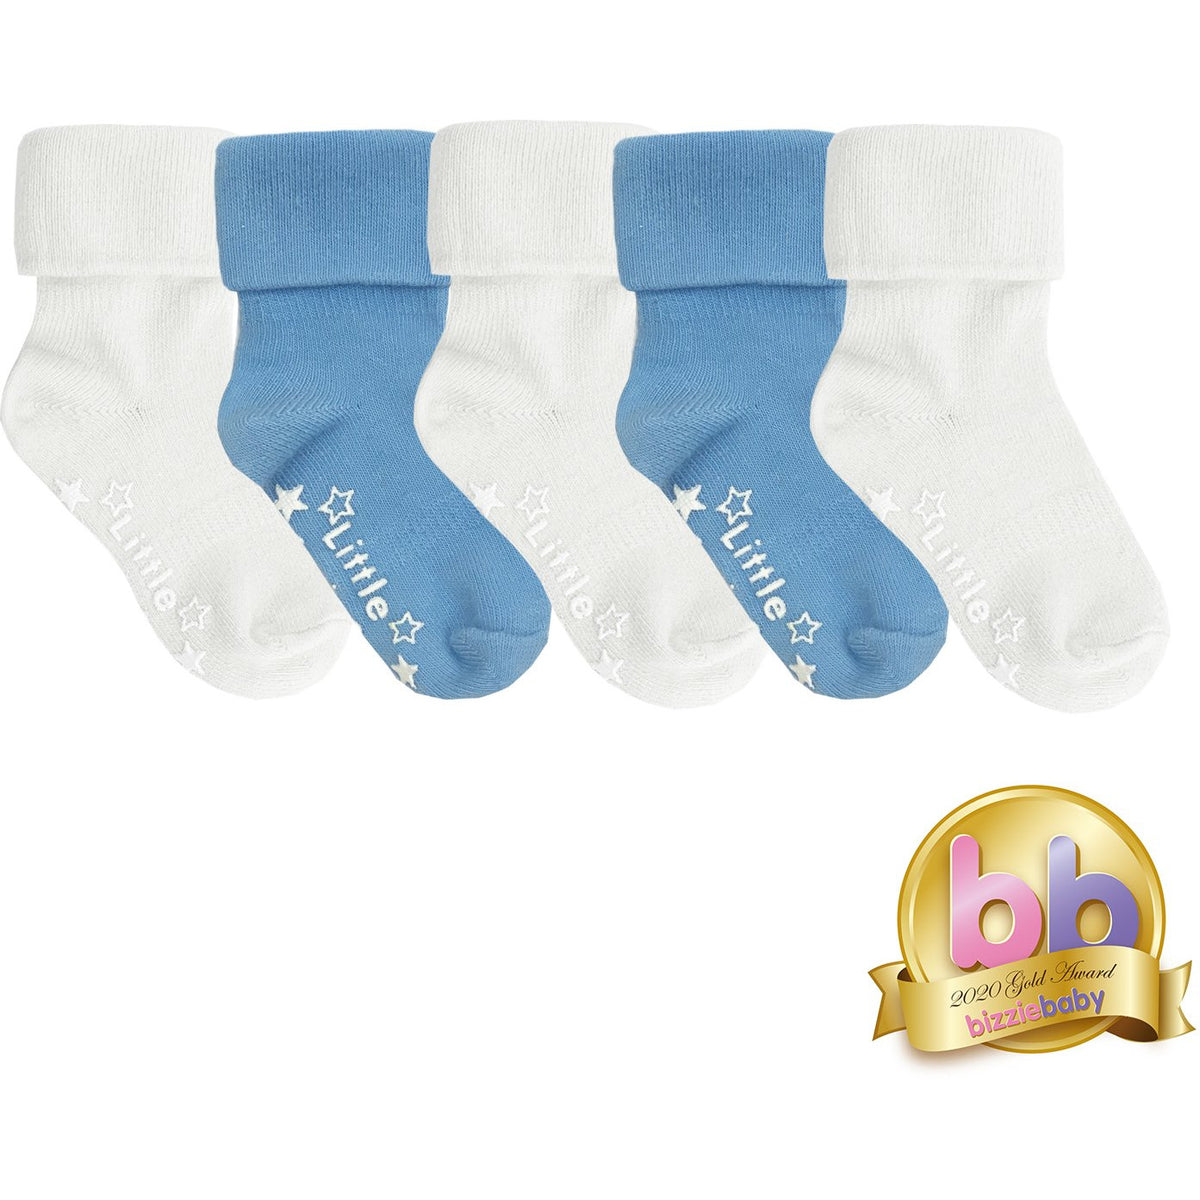 Non-Slip Stay on Baby and Toddler Socks - 5 Pack in Ocean Blue & White